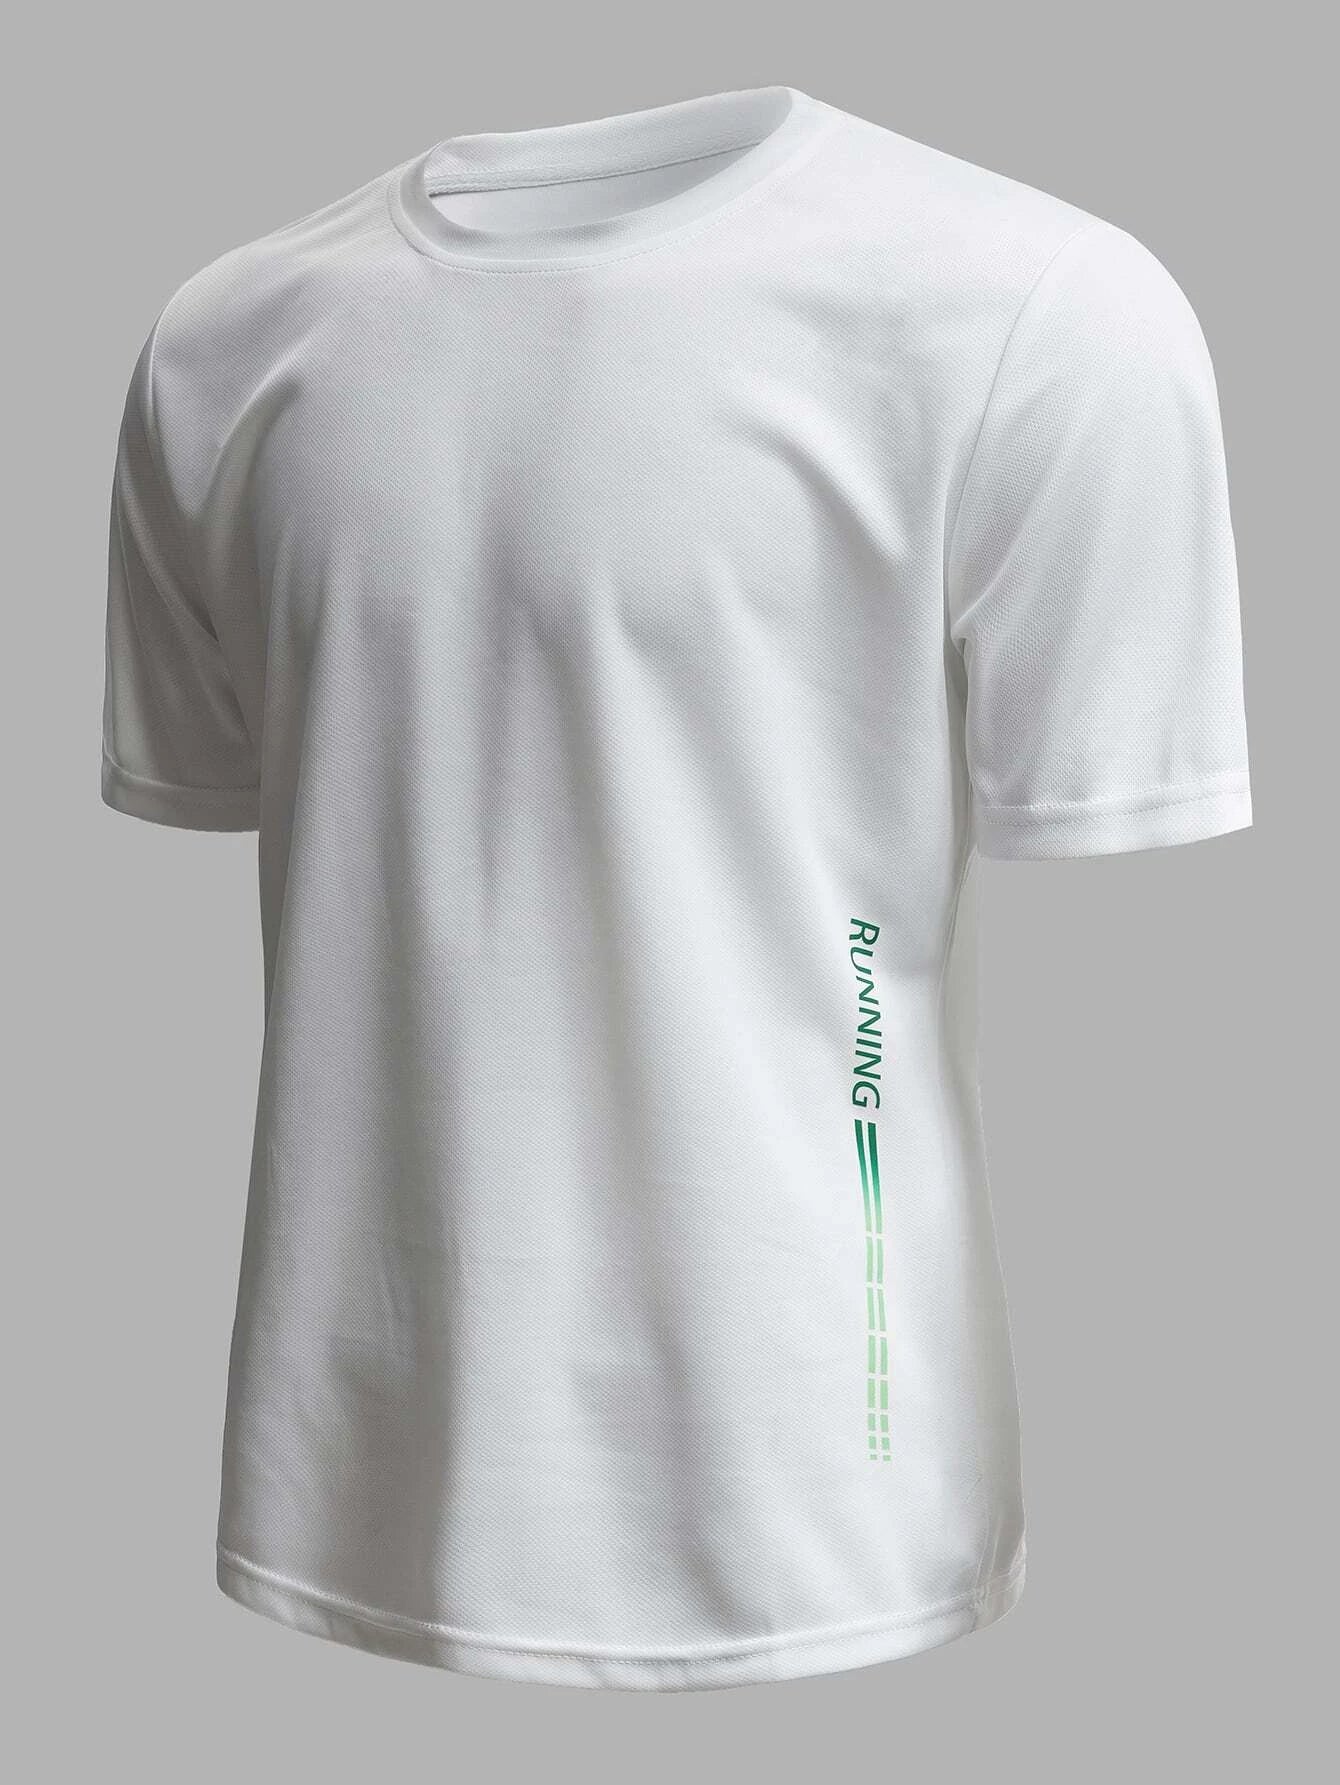 7976 a08-13 Camiseta deportiva con monograma para hombre